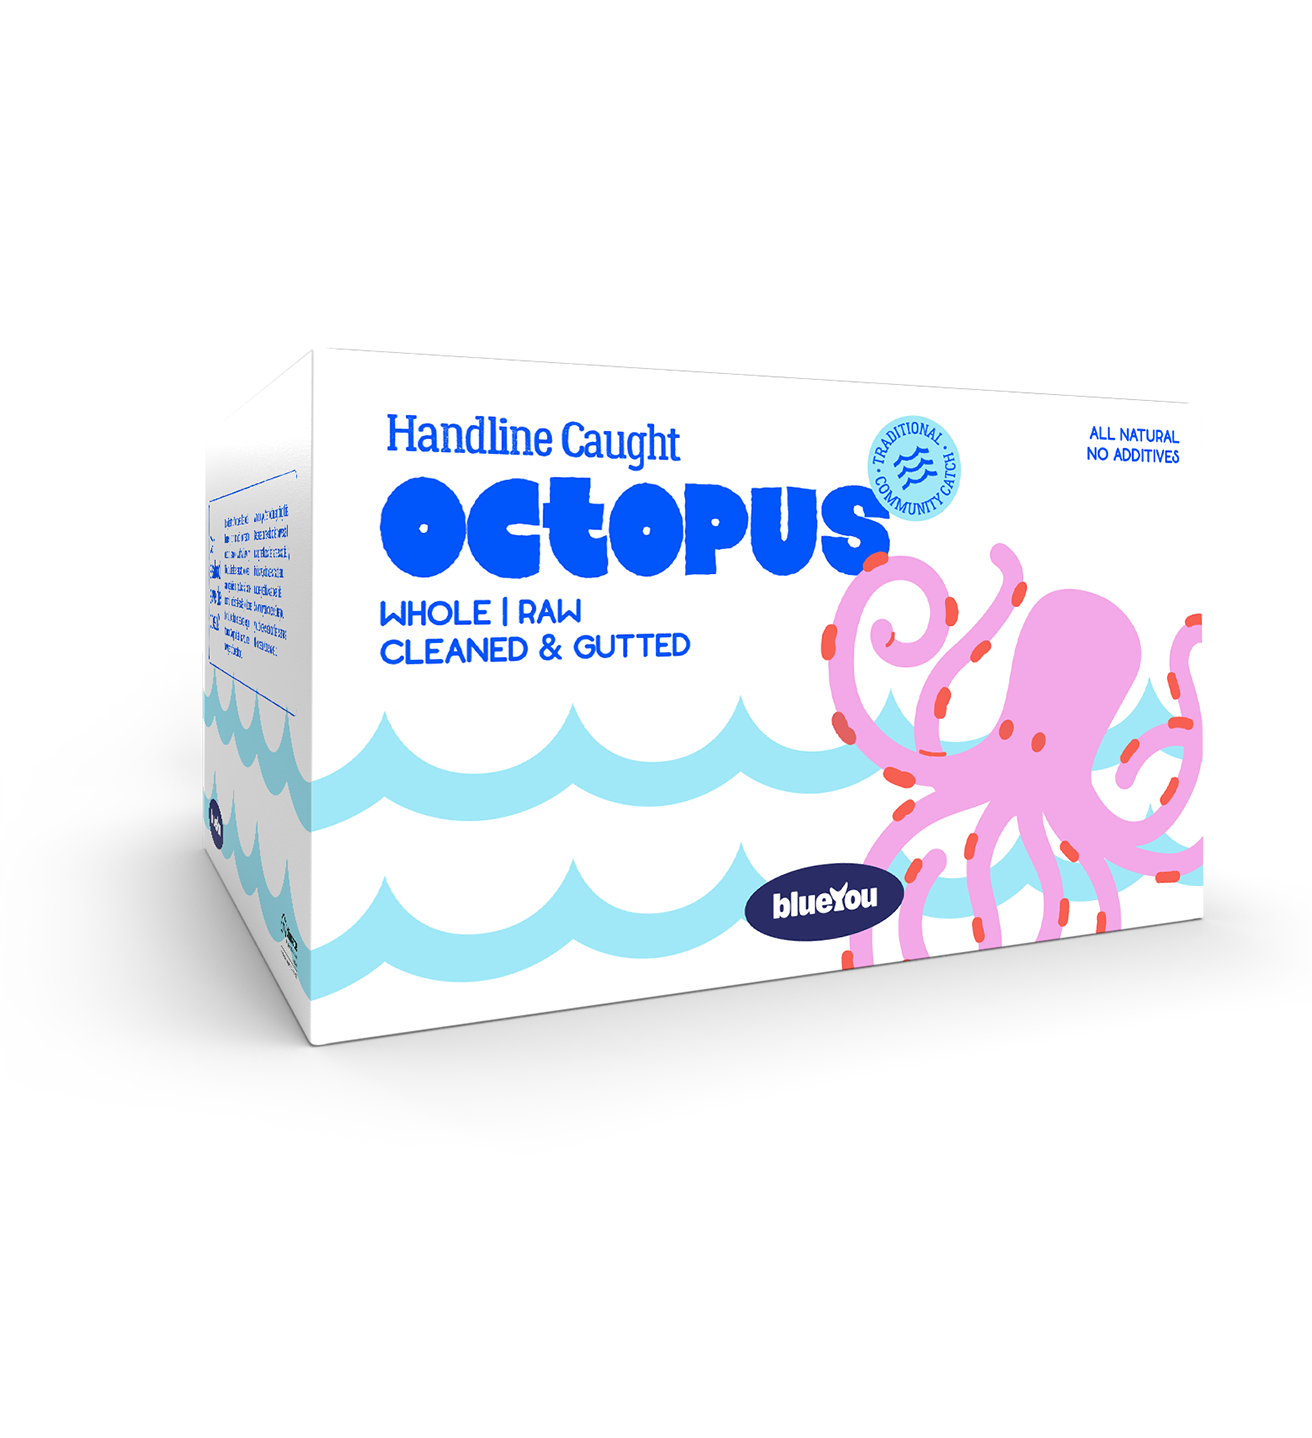 By website pics master Kopie 2 0001s 0021 handlinecaught octopus